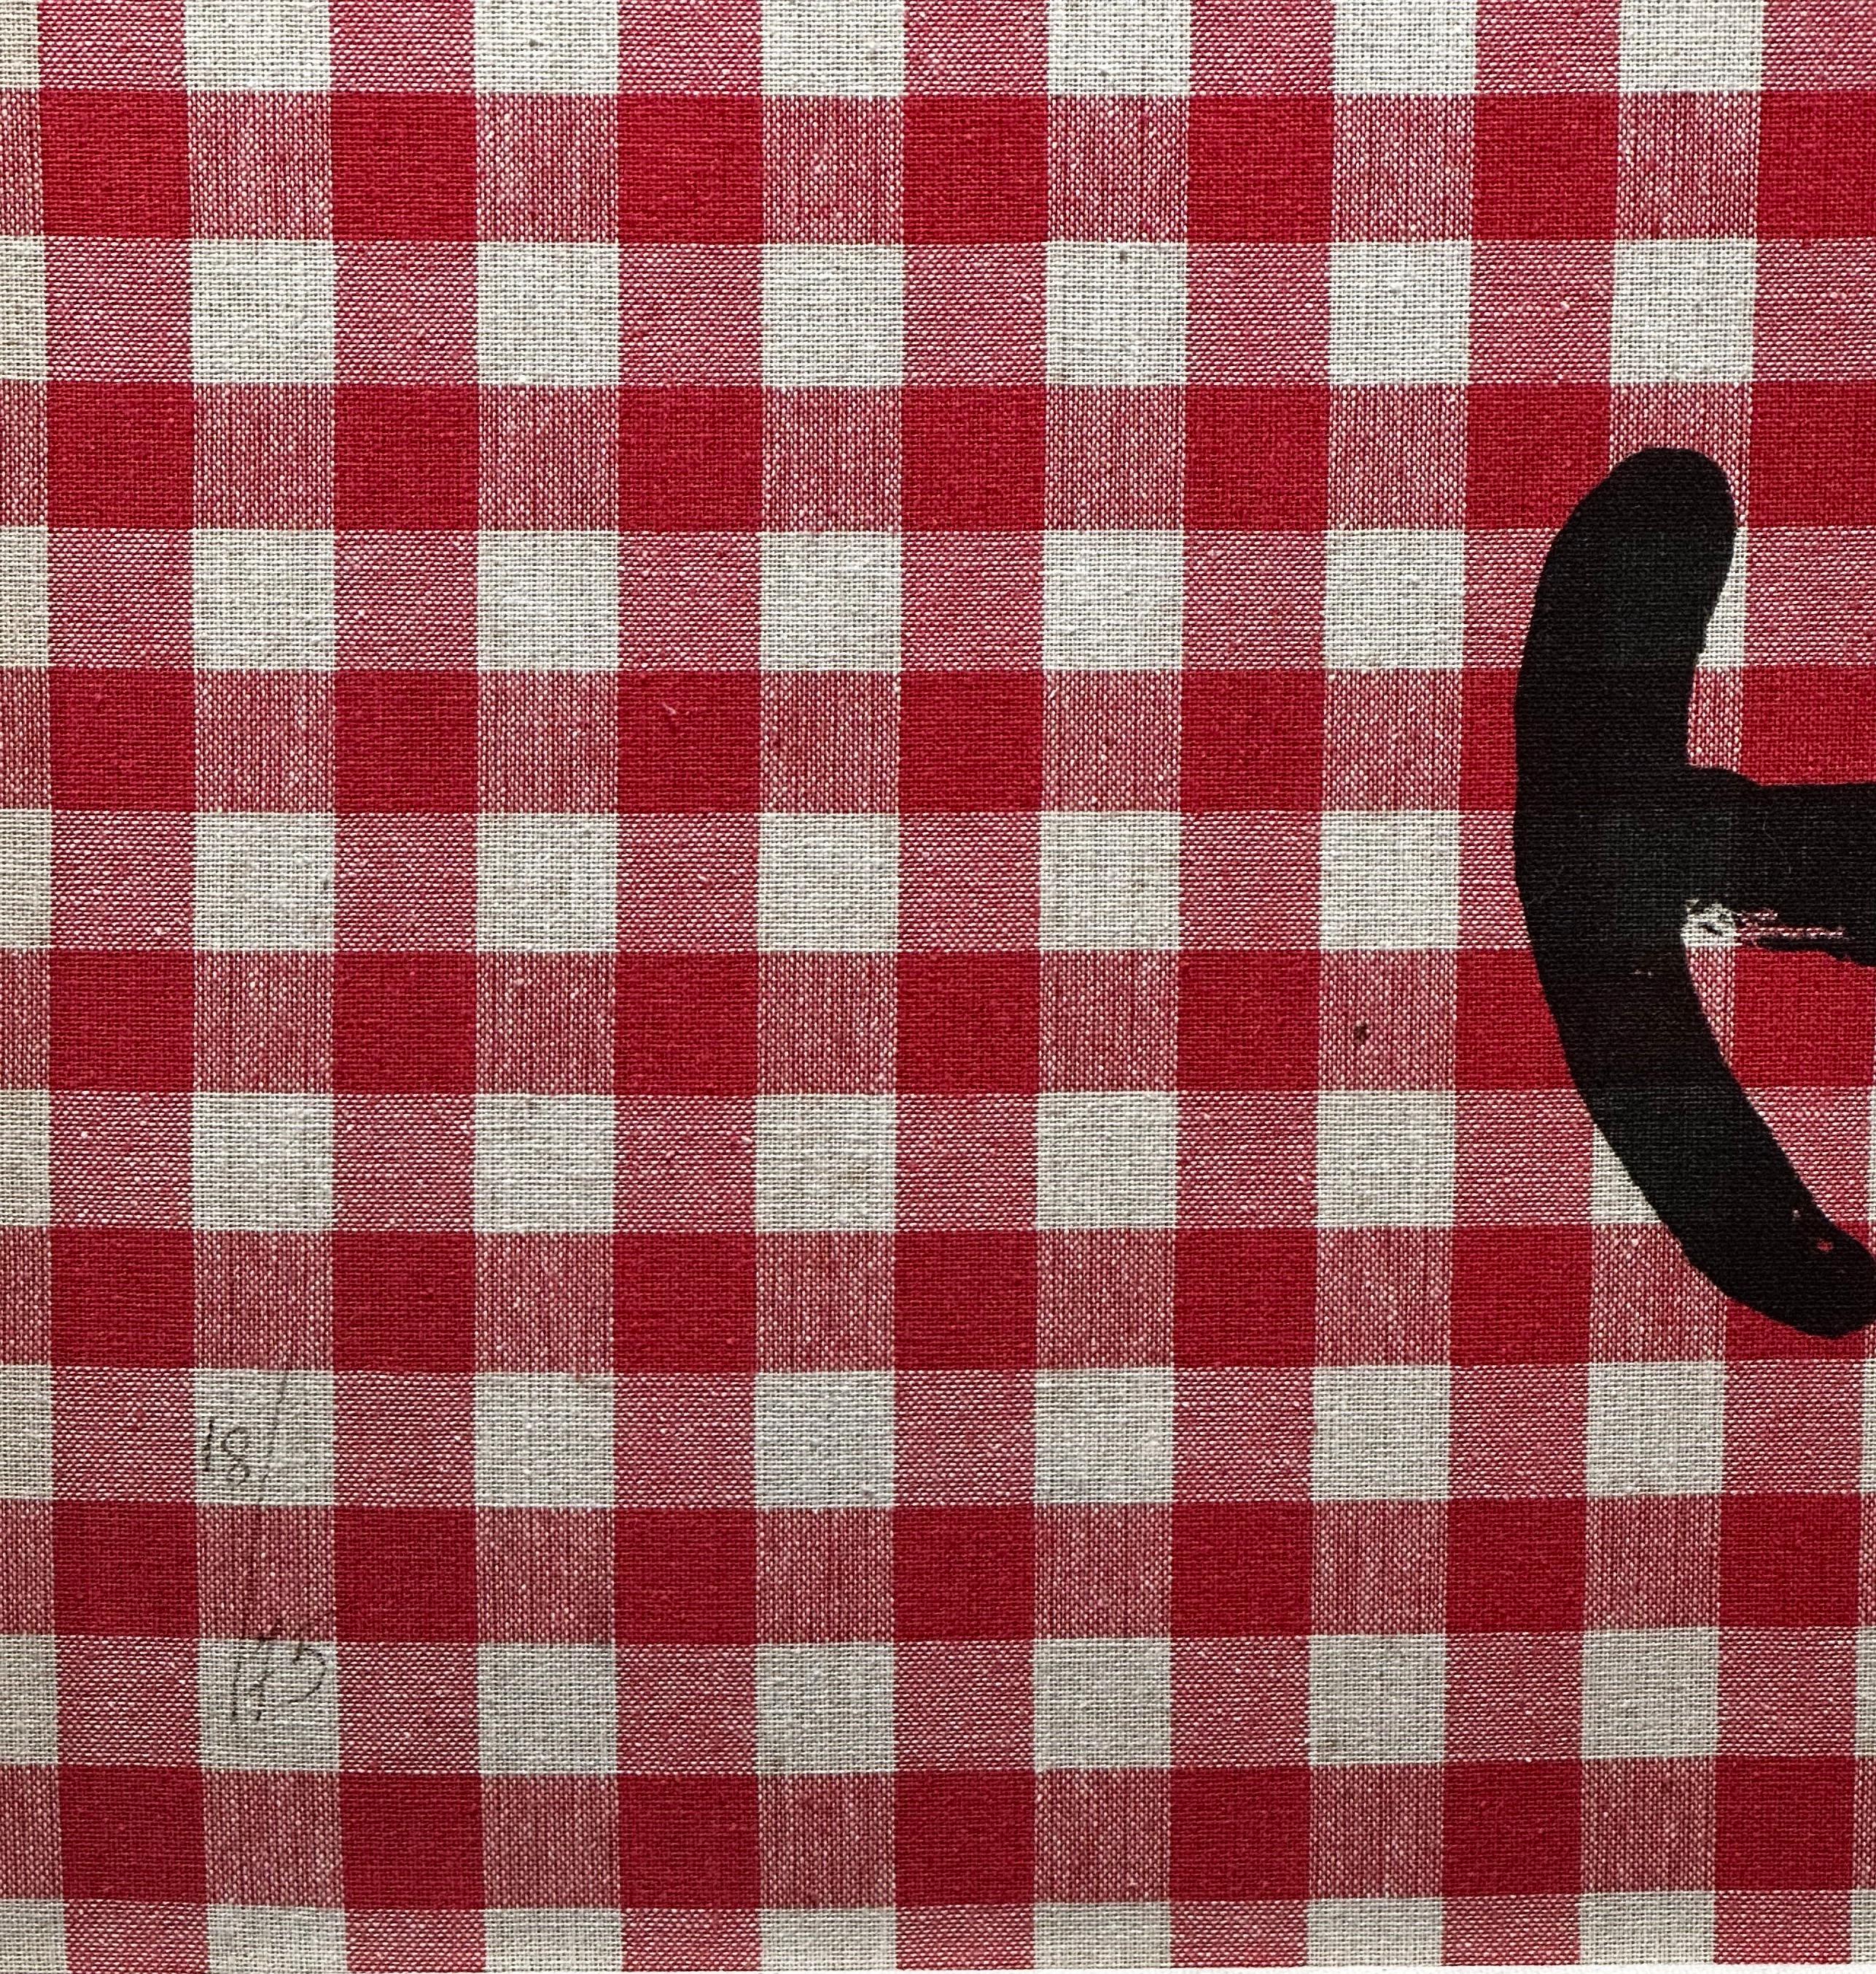 Artiste : Joan Miro
Titre : L'Illetre Aux Carreaux Rouges
Moyen :  Lithographie en couleurs sur toile rouge et blanche sur Mandeure Chiffon montée sur carton.
Taille : 24.37 x 32.25 pouces 
Signé :  Signé à la main
Édition : 18/75
Éditeur : Maeght,